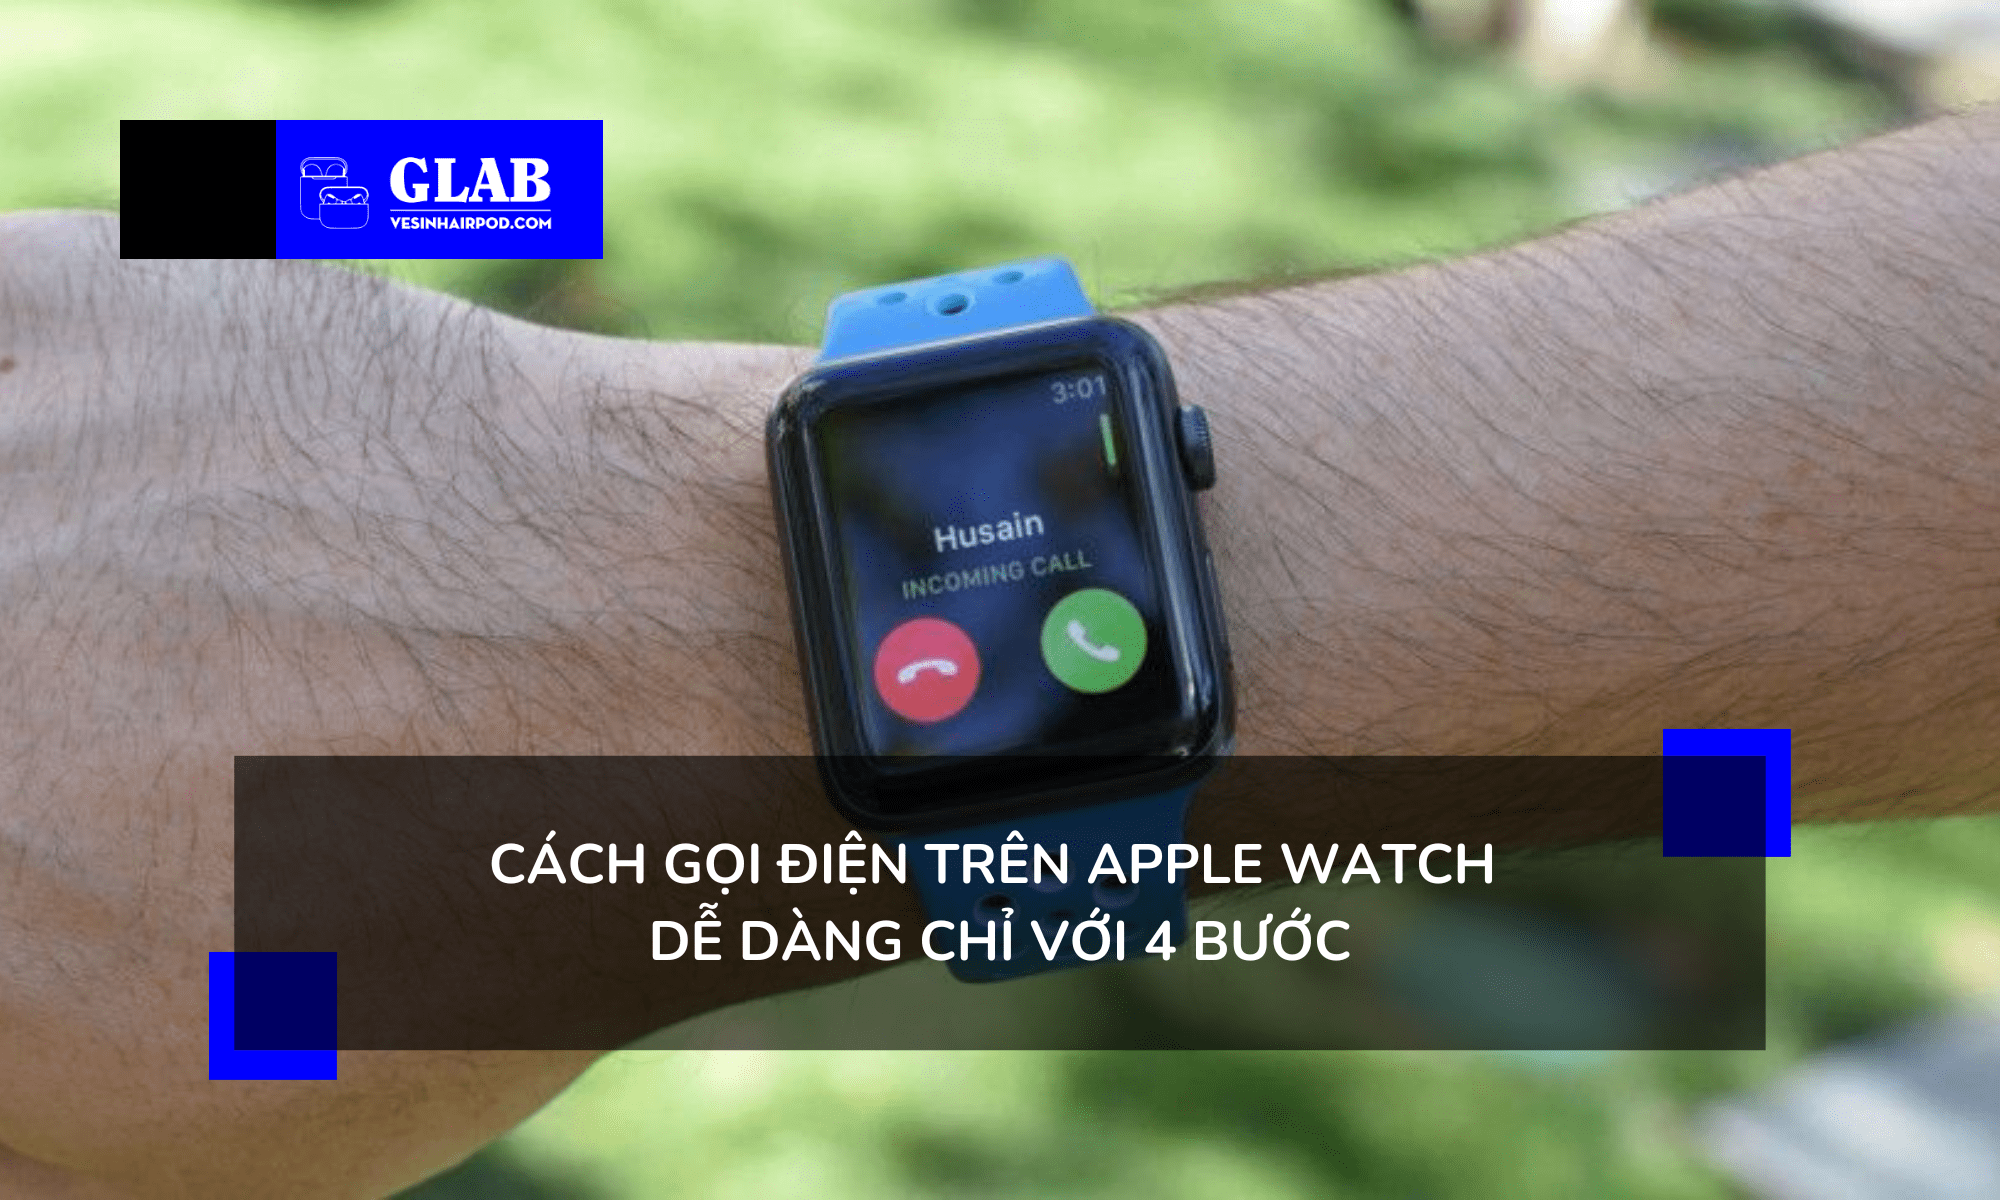 cach-goi-dien-tren-apple-watch